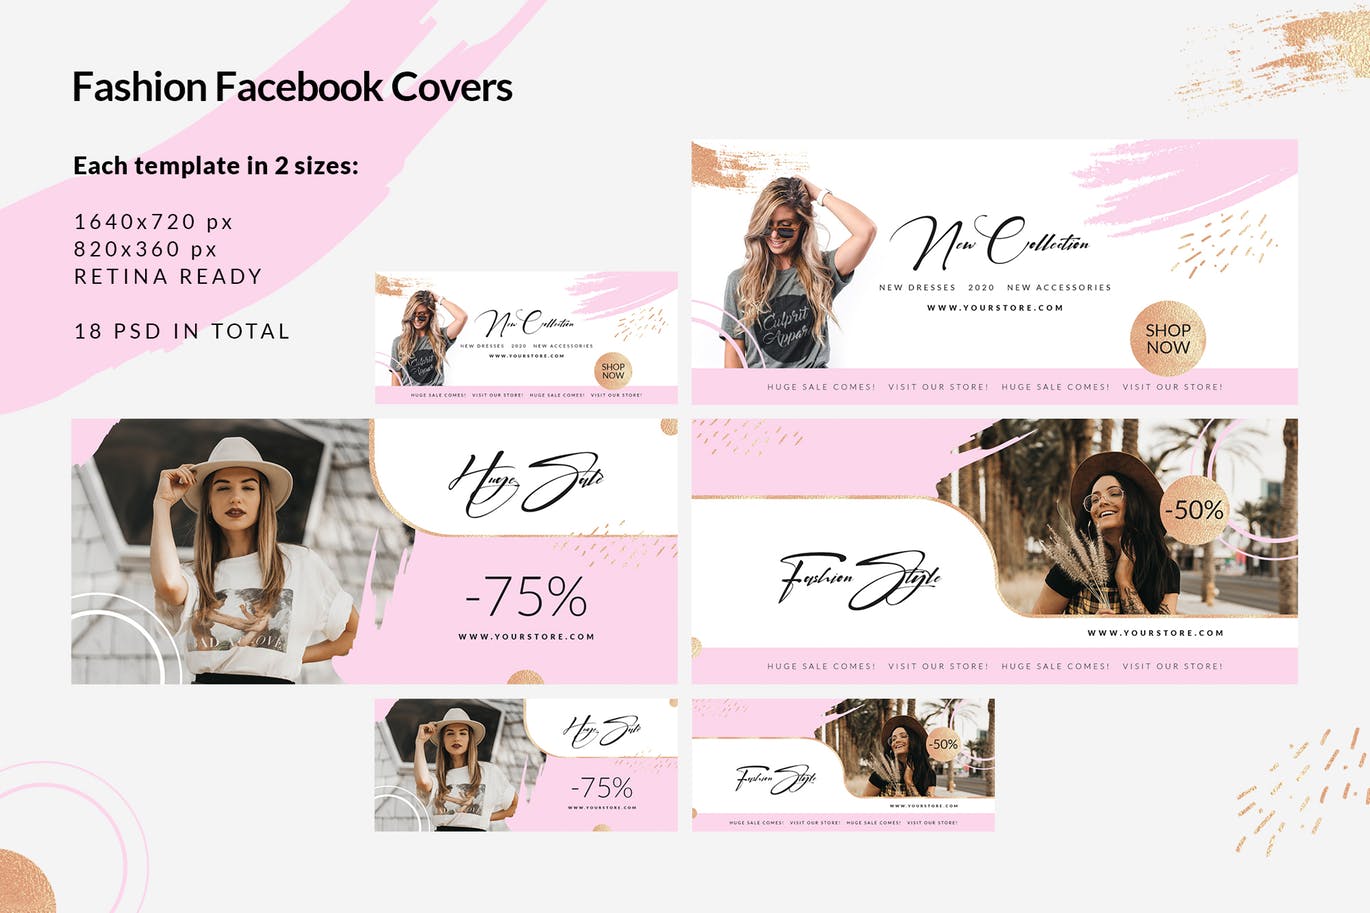 时尚品牌打折促销Facebook封面设计模板大洋岛精选 Fashion Facebook Covers插图2